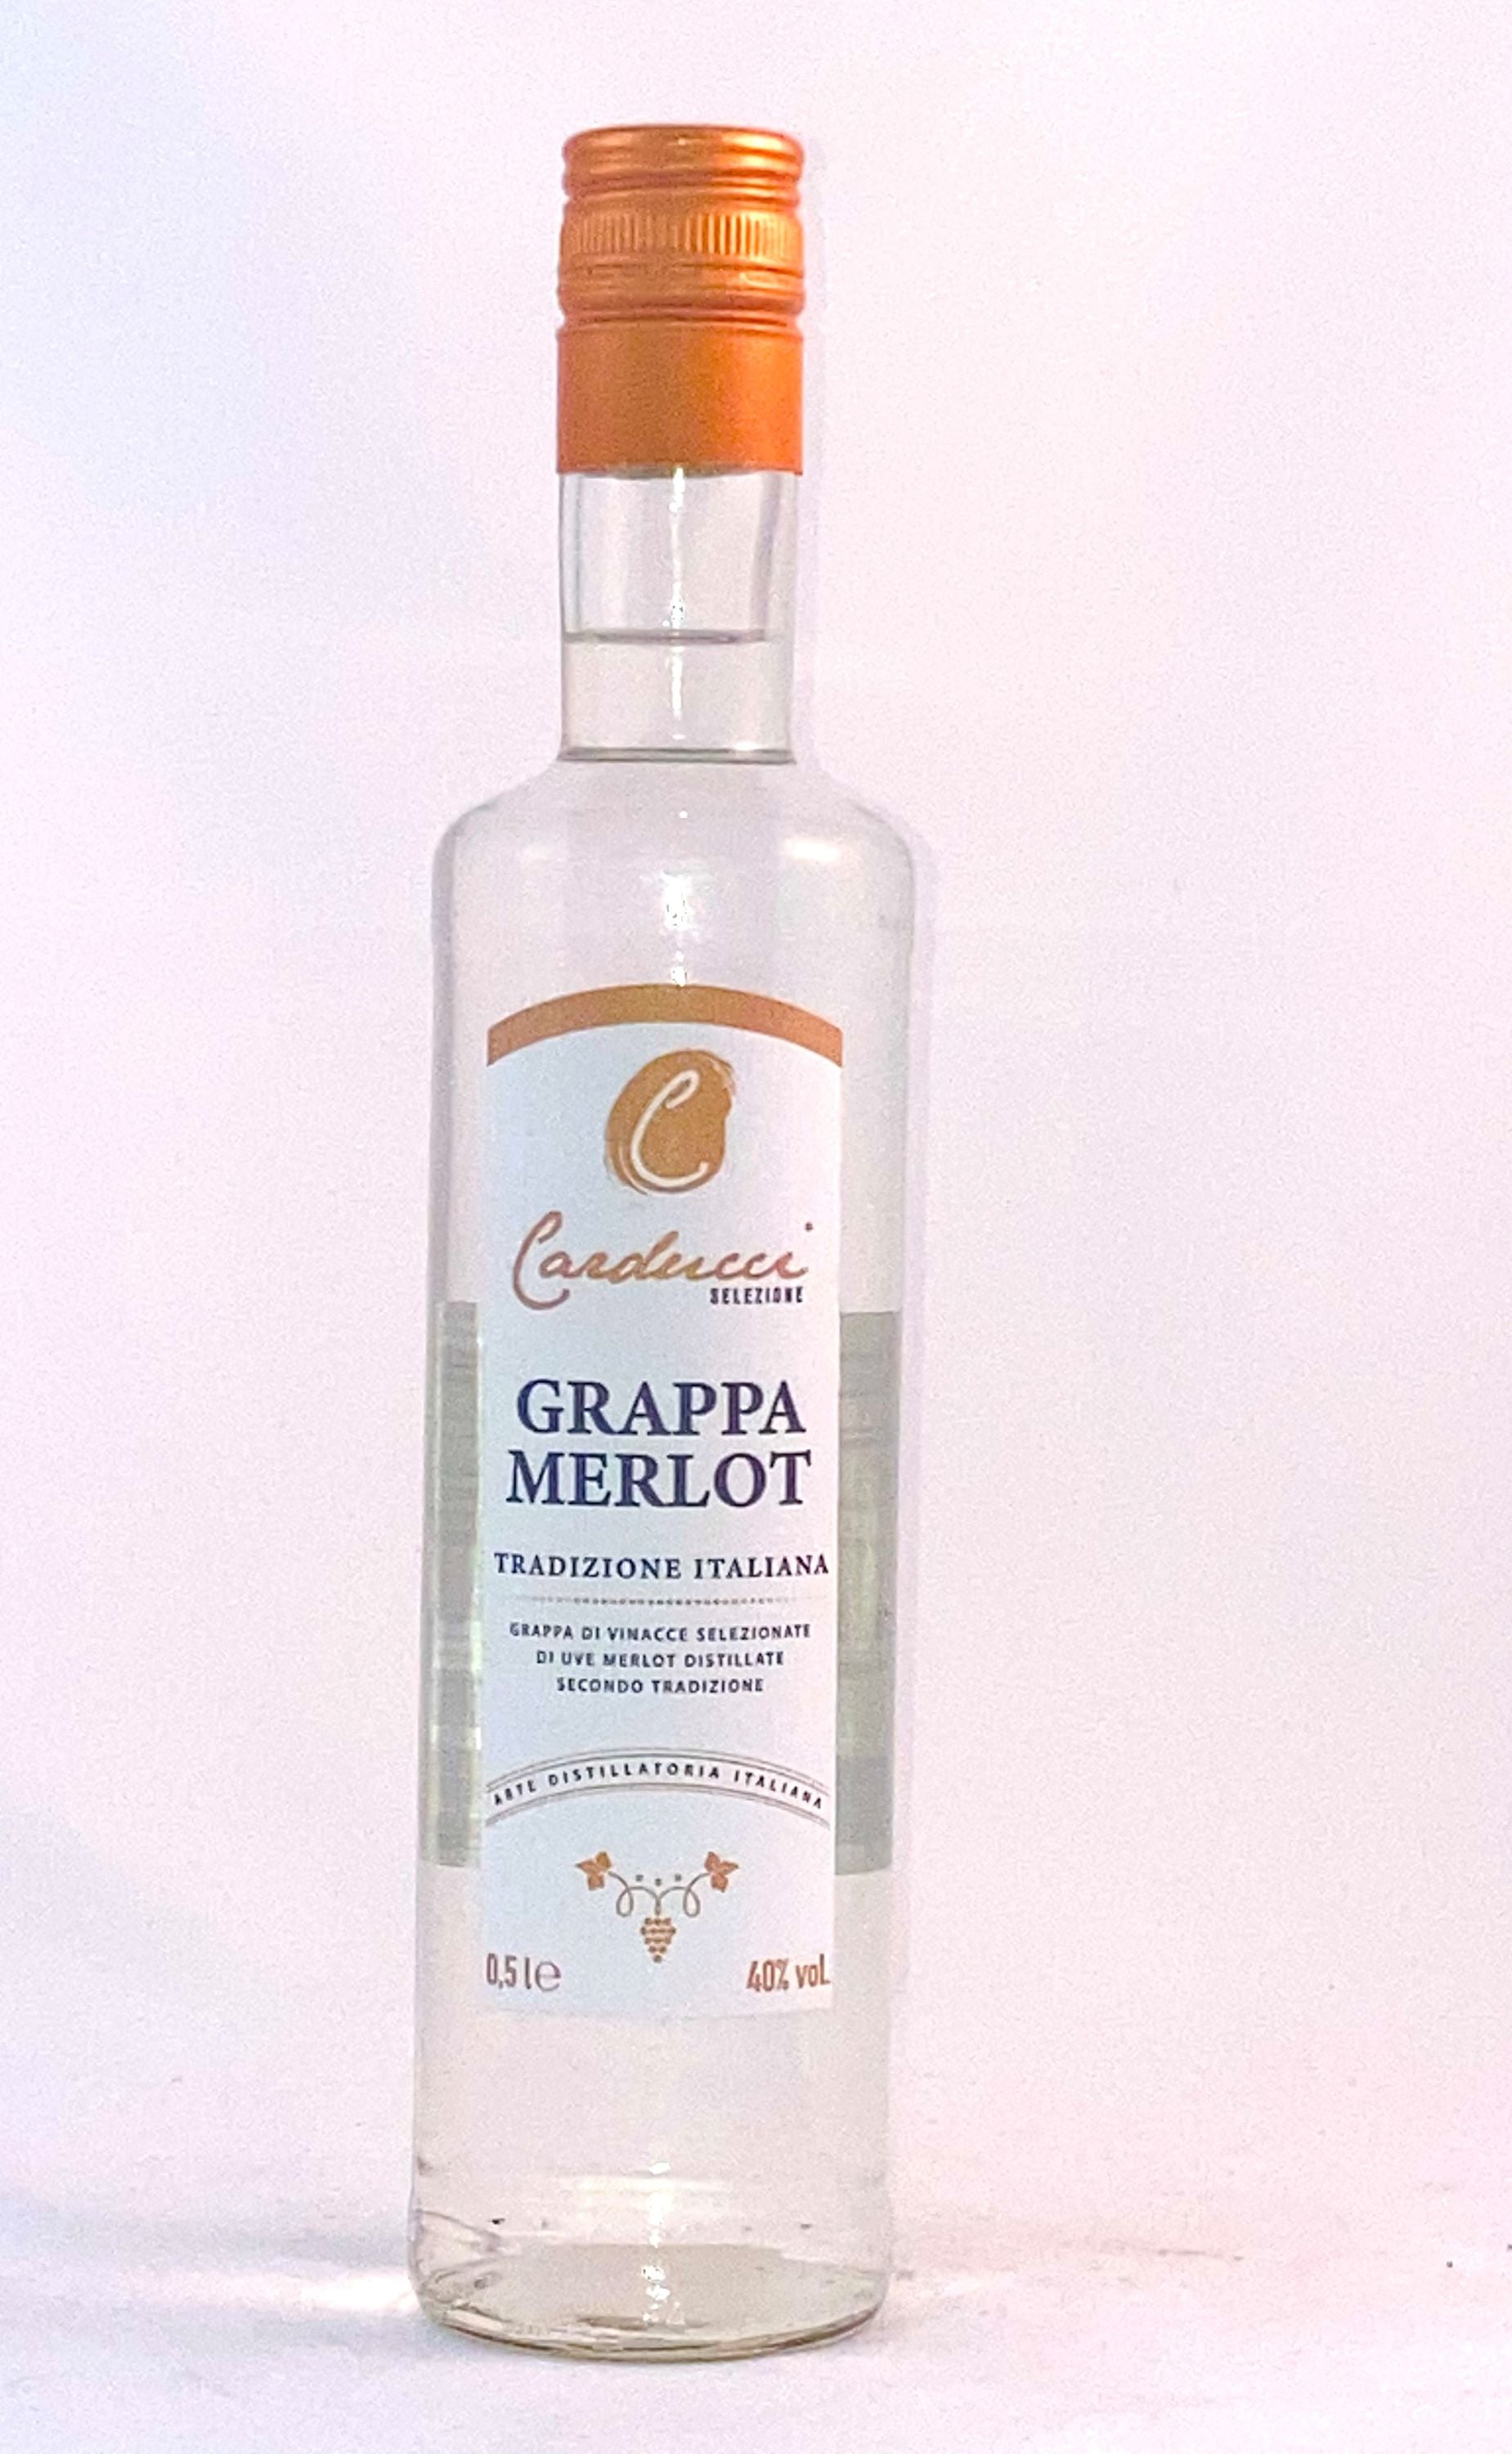 Carducci Grappa Merlot 0.5l, alc. 40% by volume, Grappa Italy